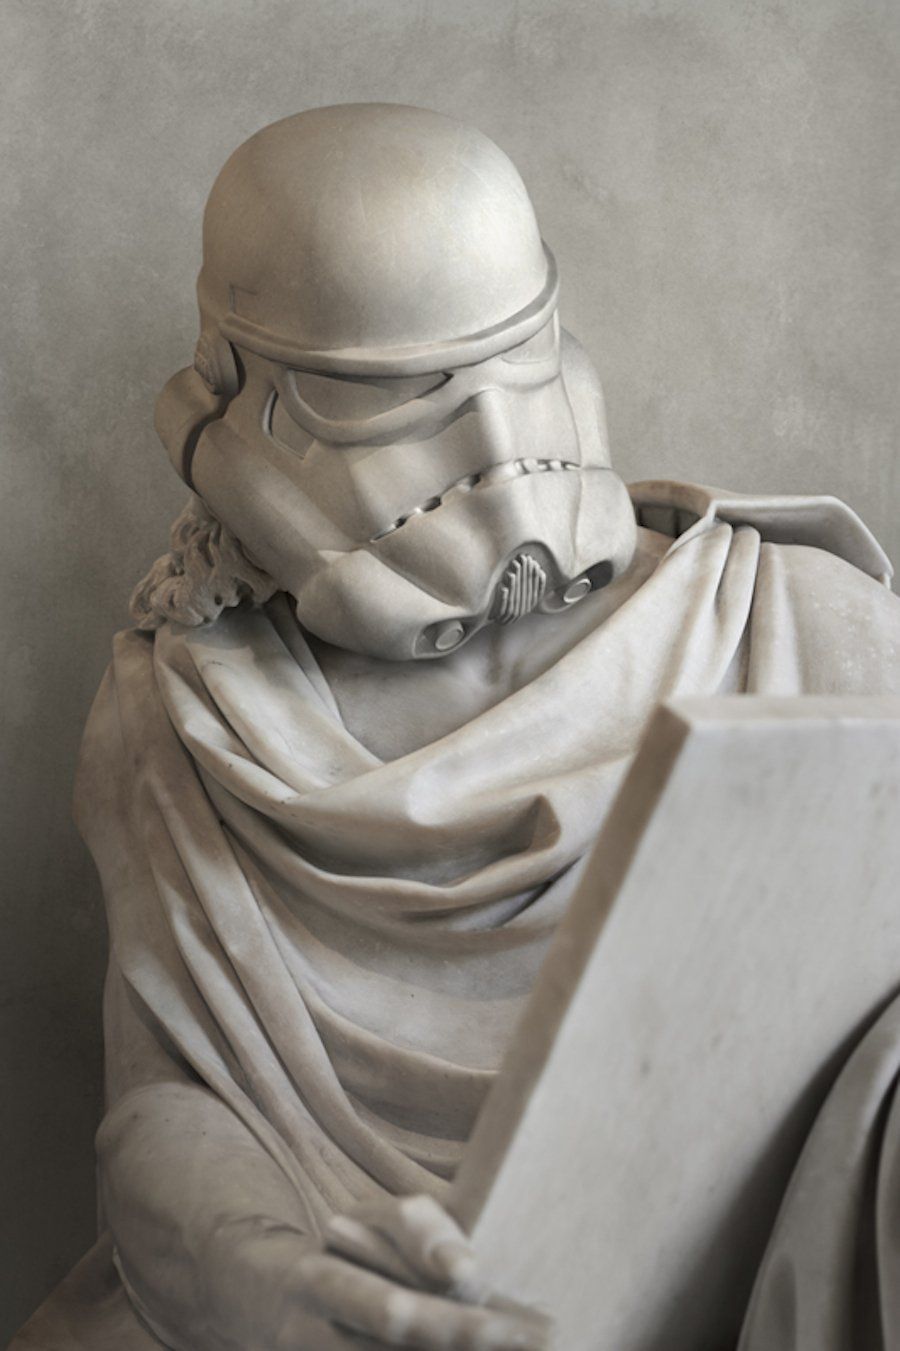 Des sculptures en marbre inspirées de Star Wars #3